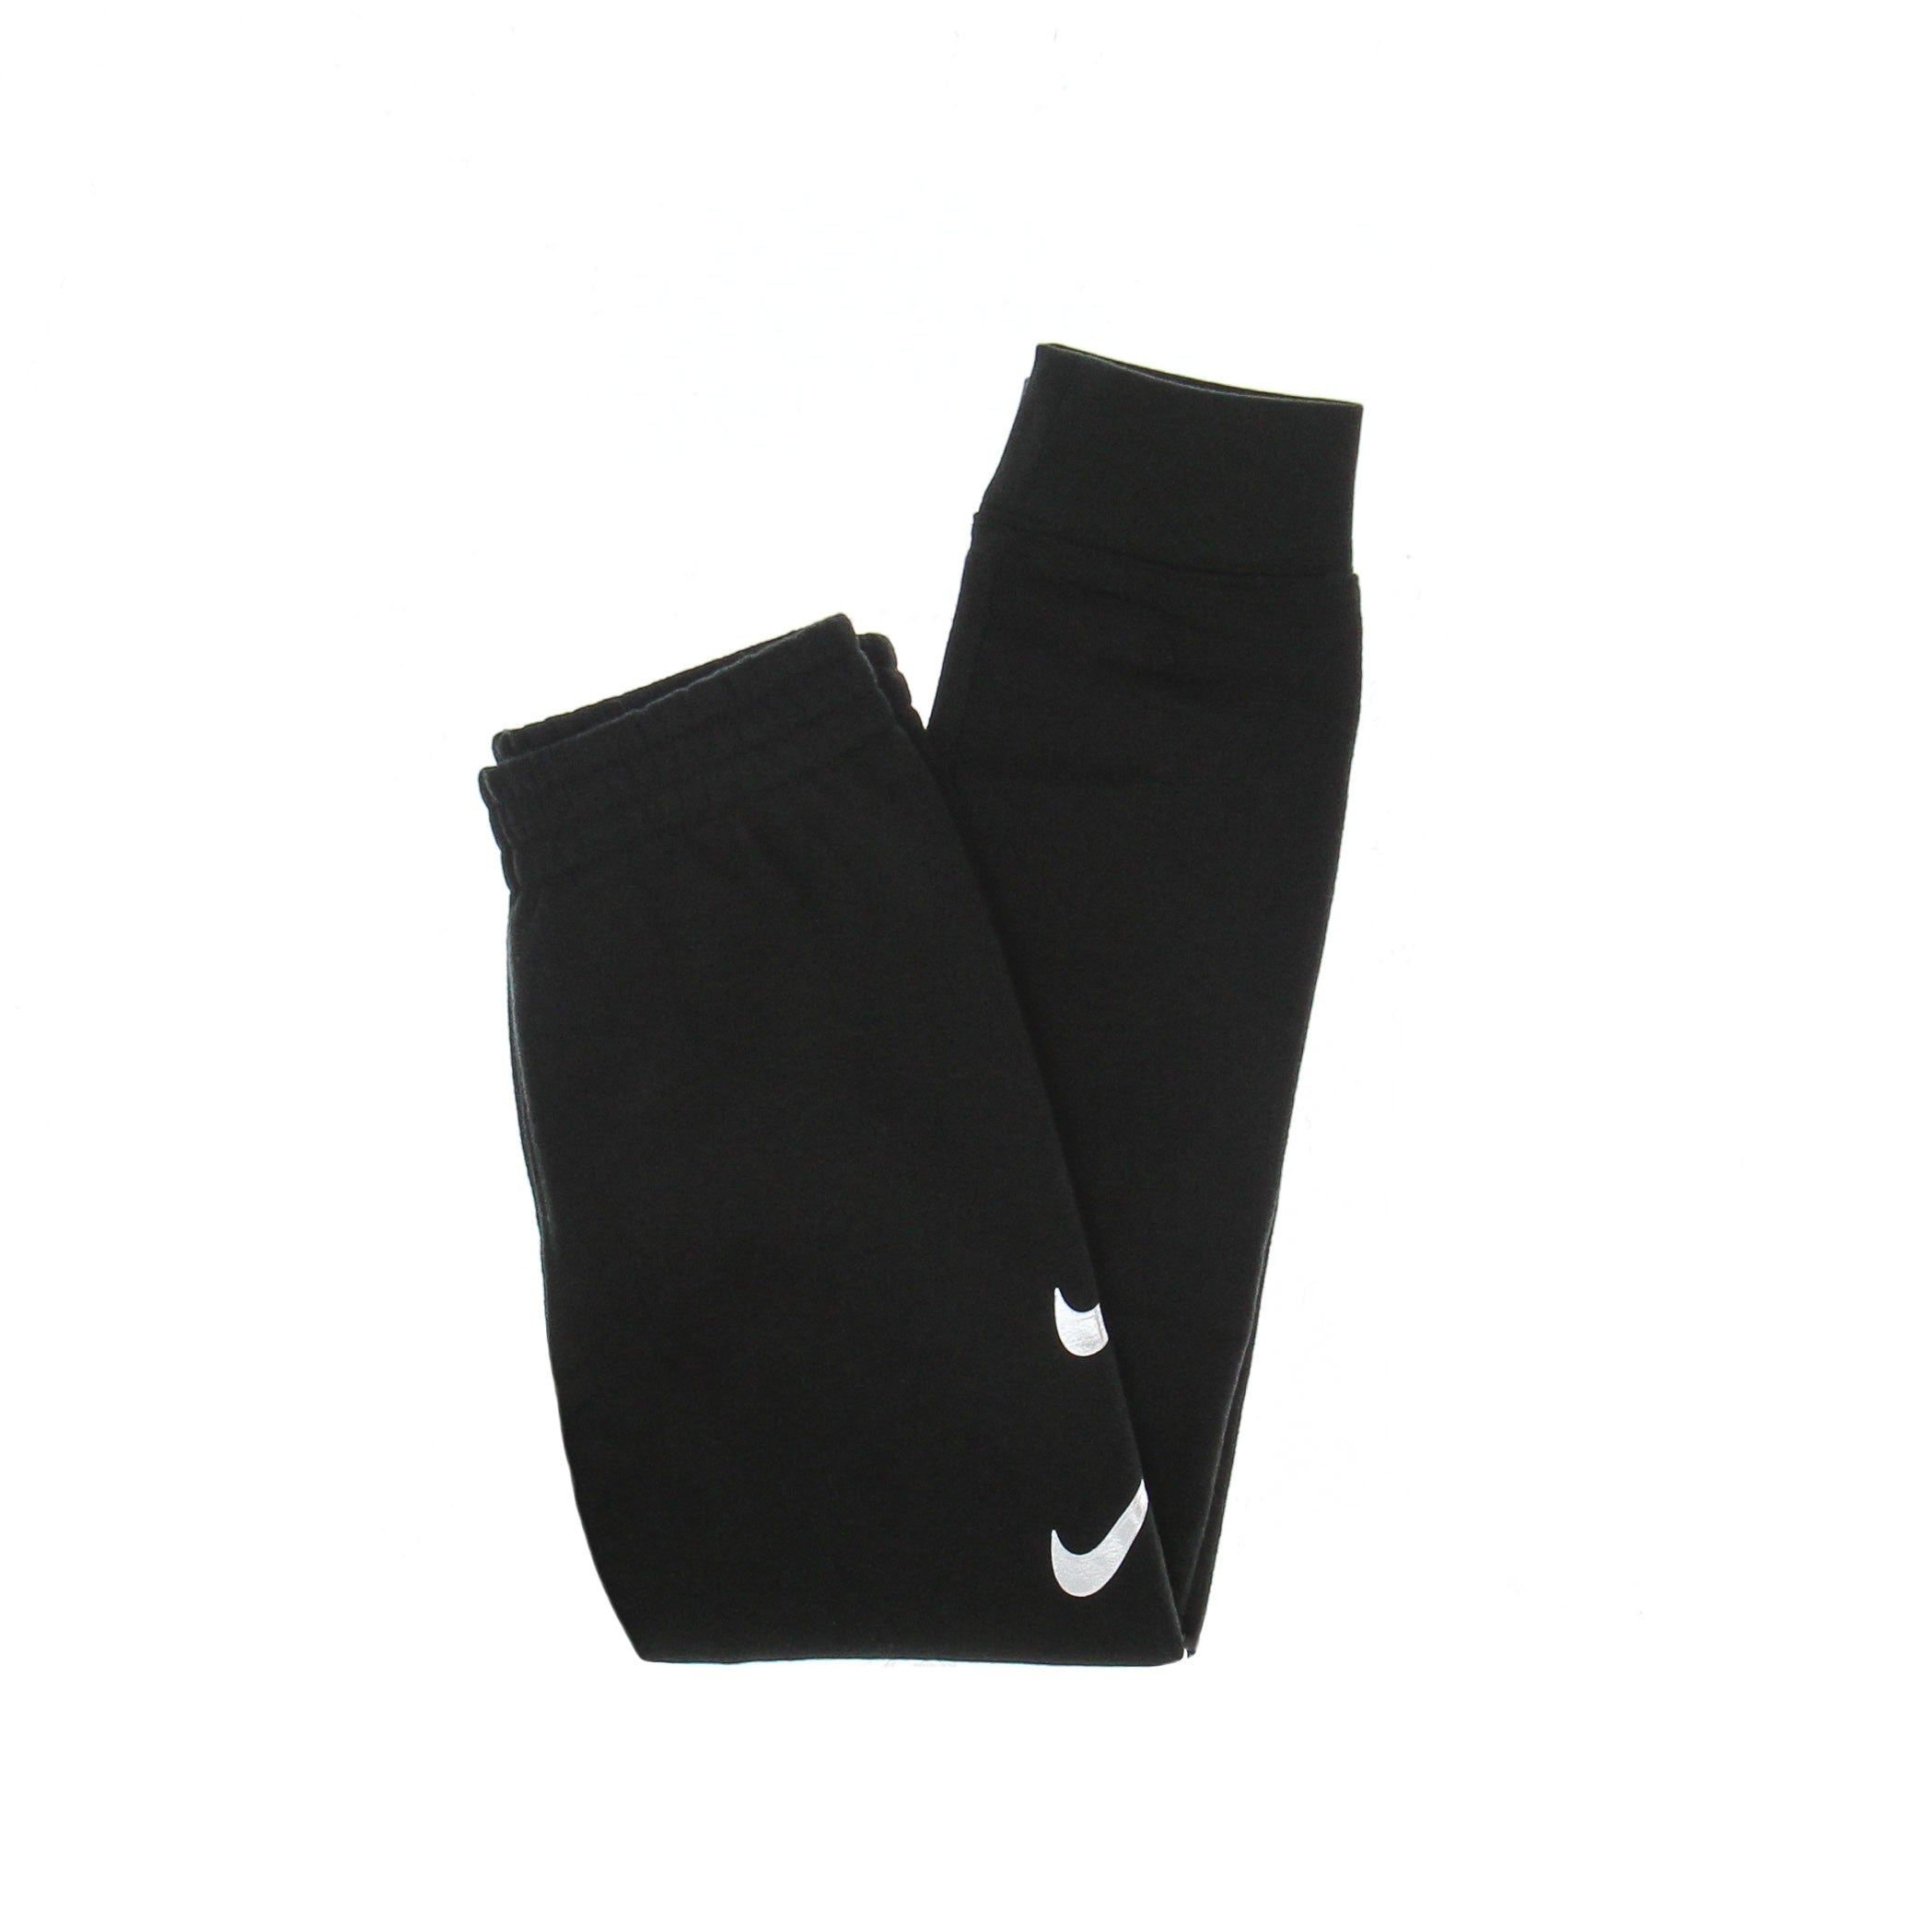 Nike, Pantalone Tuta Felpato Bambino Fleece Pant, Black